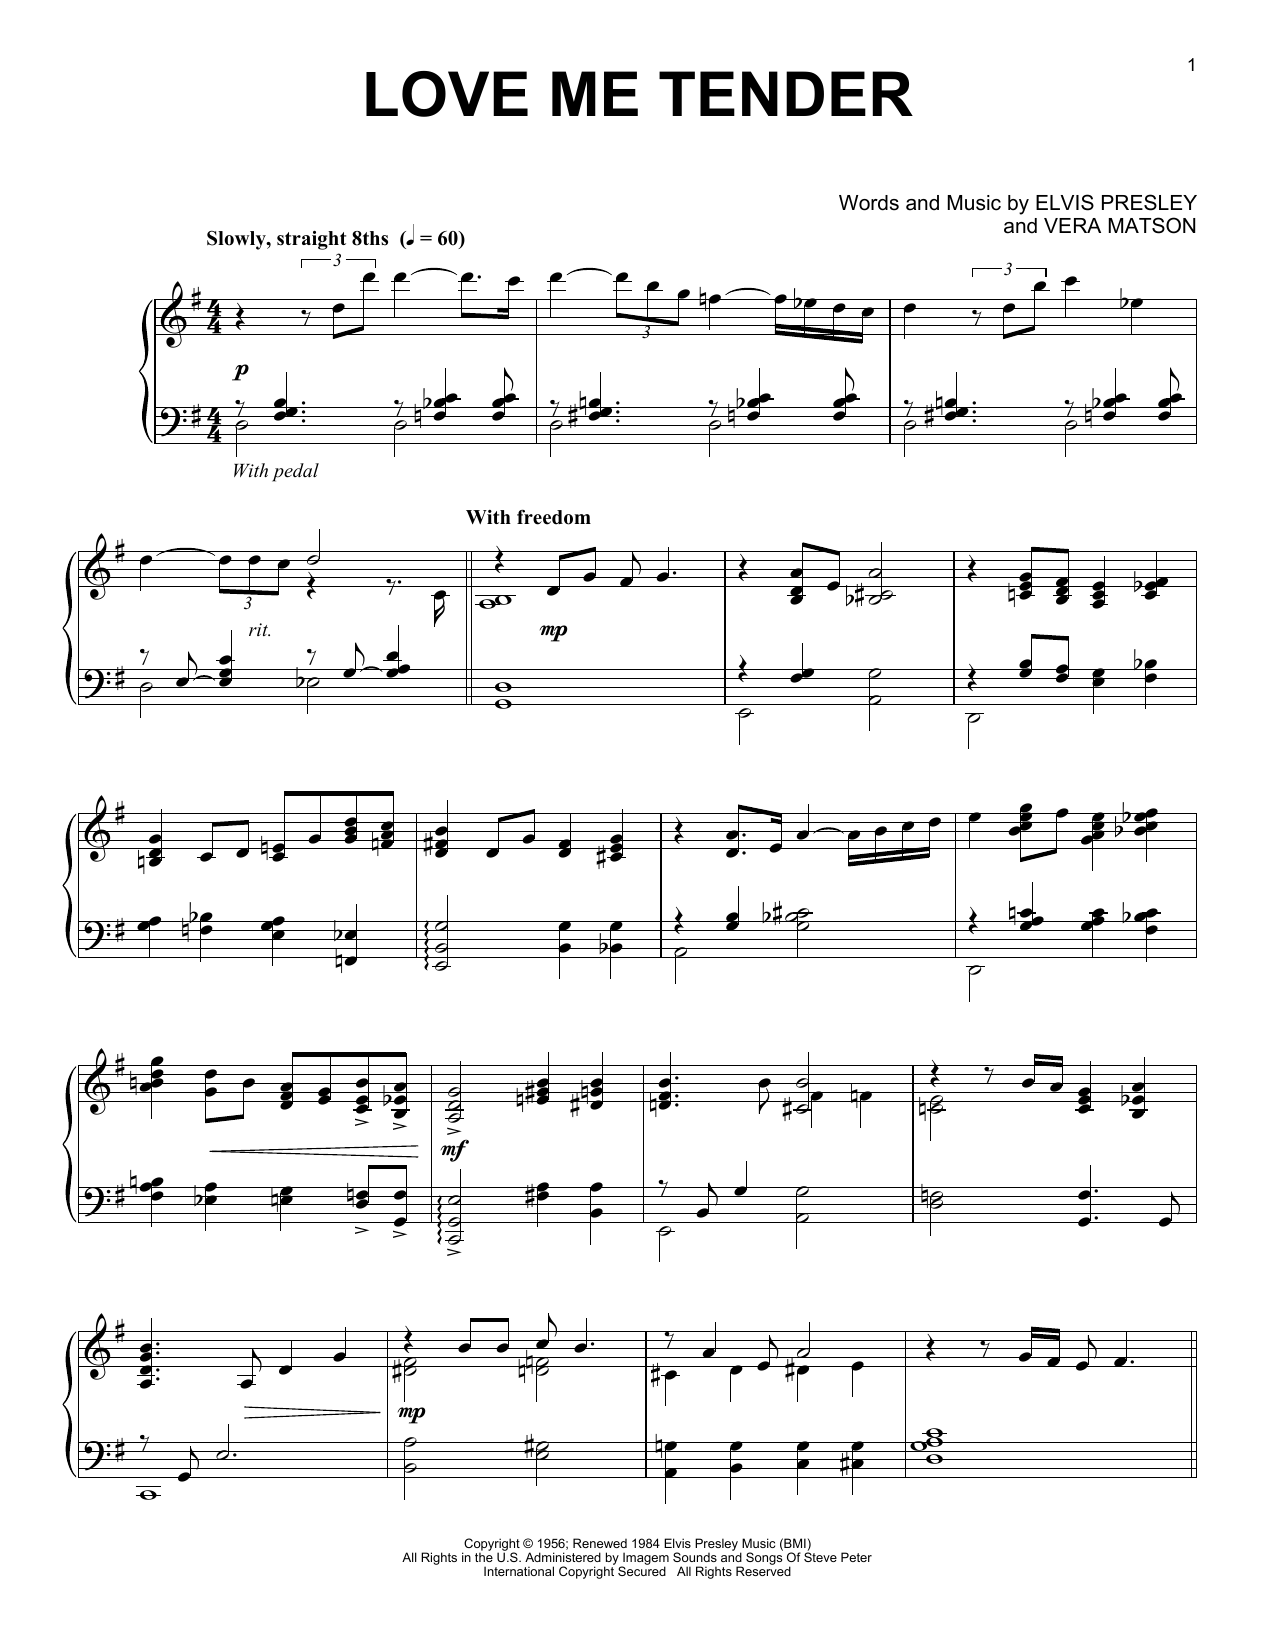 Love Me Tender [Jazz version] sheet music